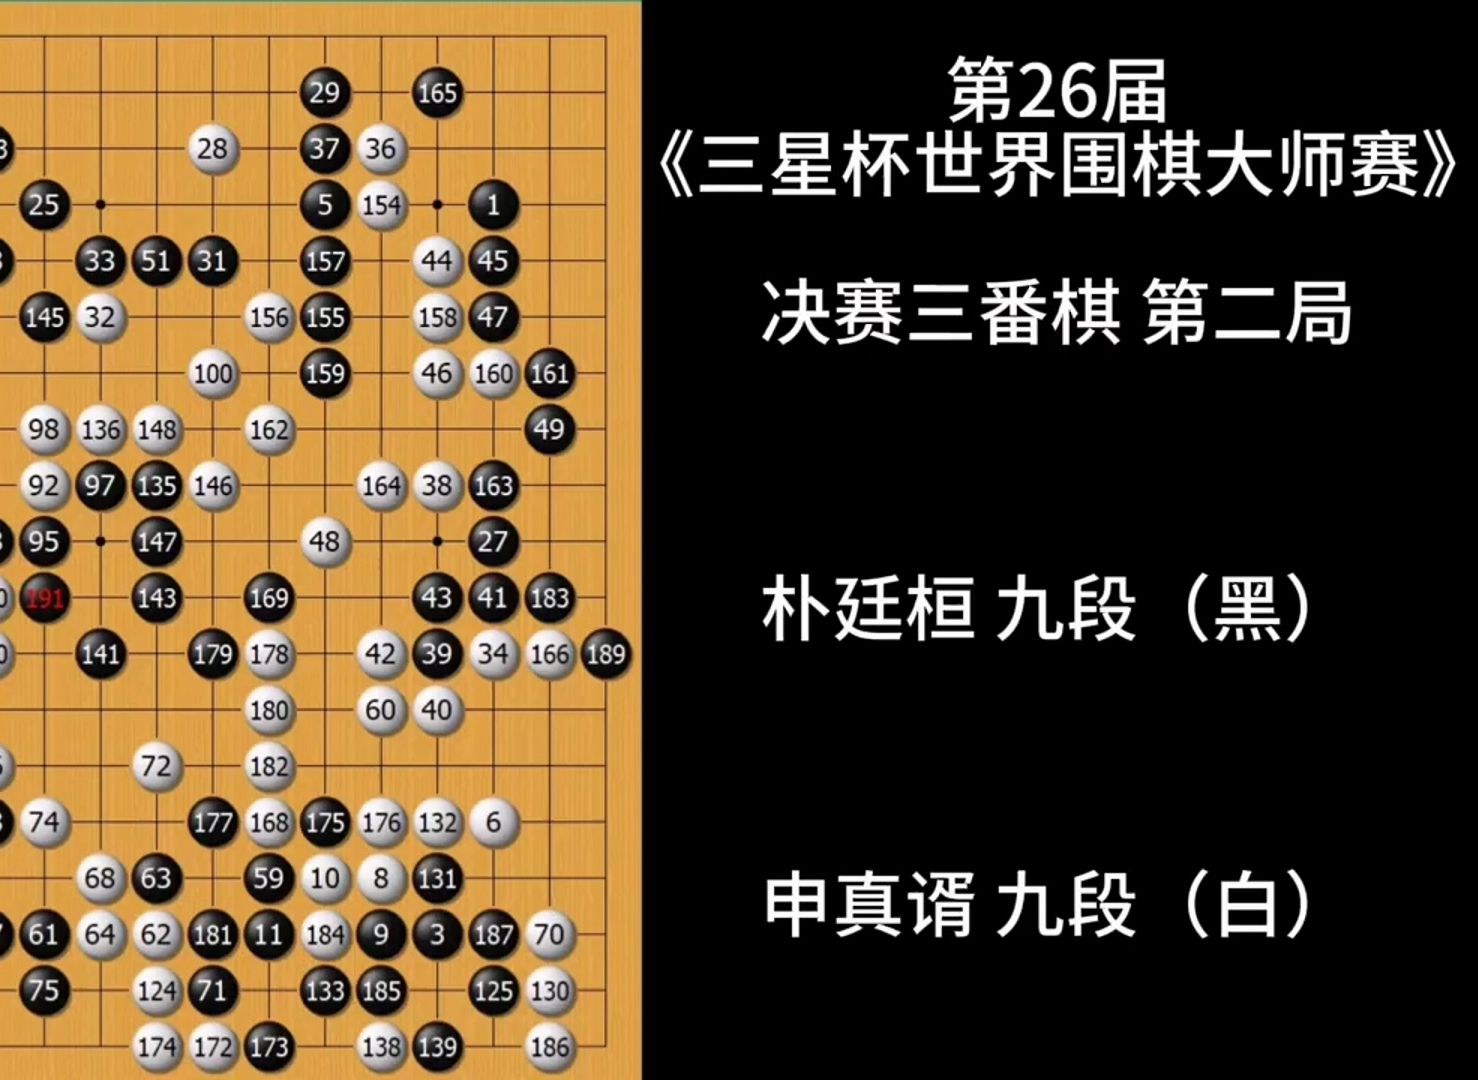 高手棋谱系列:第26届三星杯决赛 第2局 朴廷桓vs申真谞